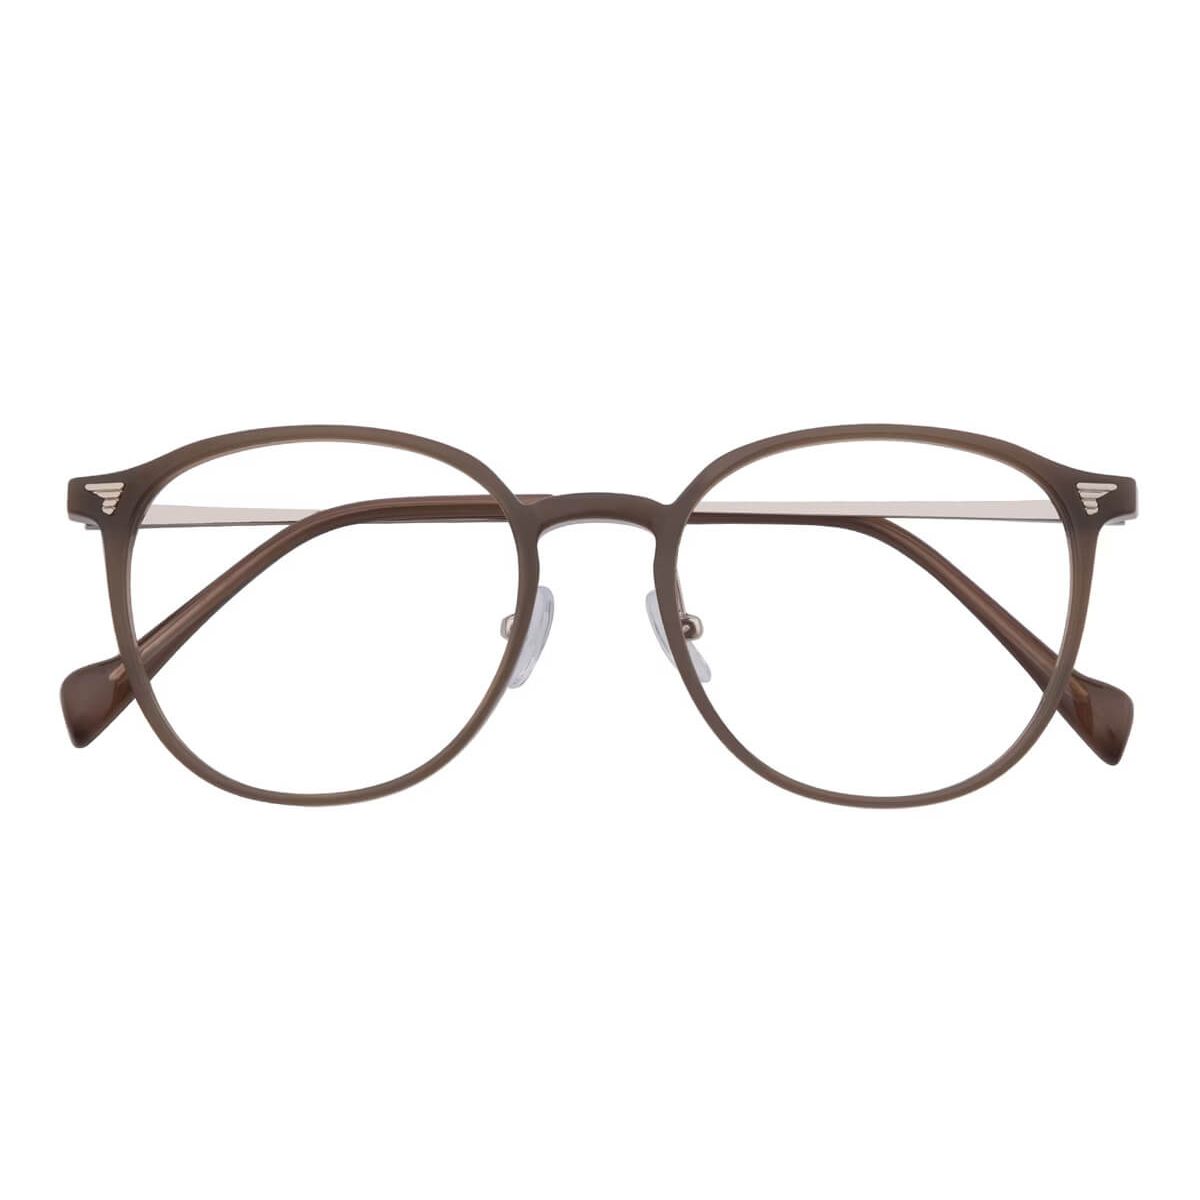 A01247 Round Oval Brown Eyeglasses Frames Leoptique